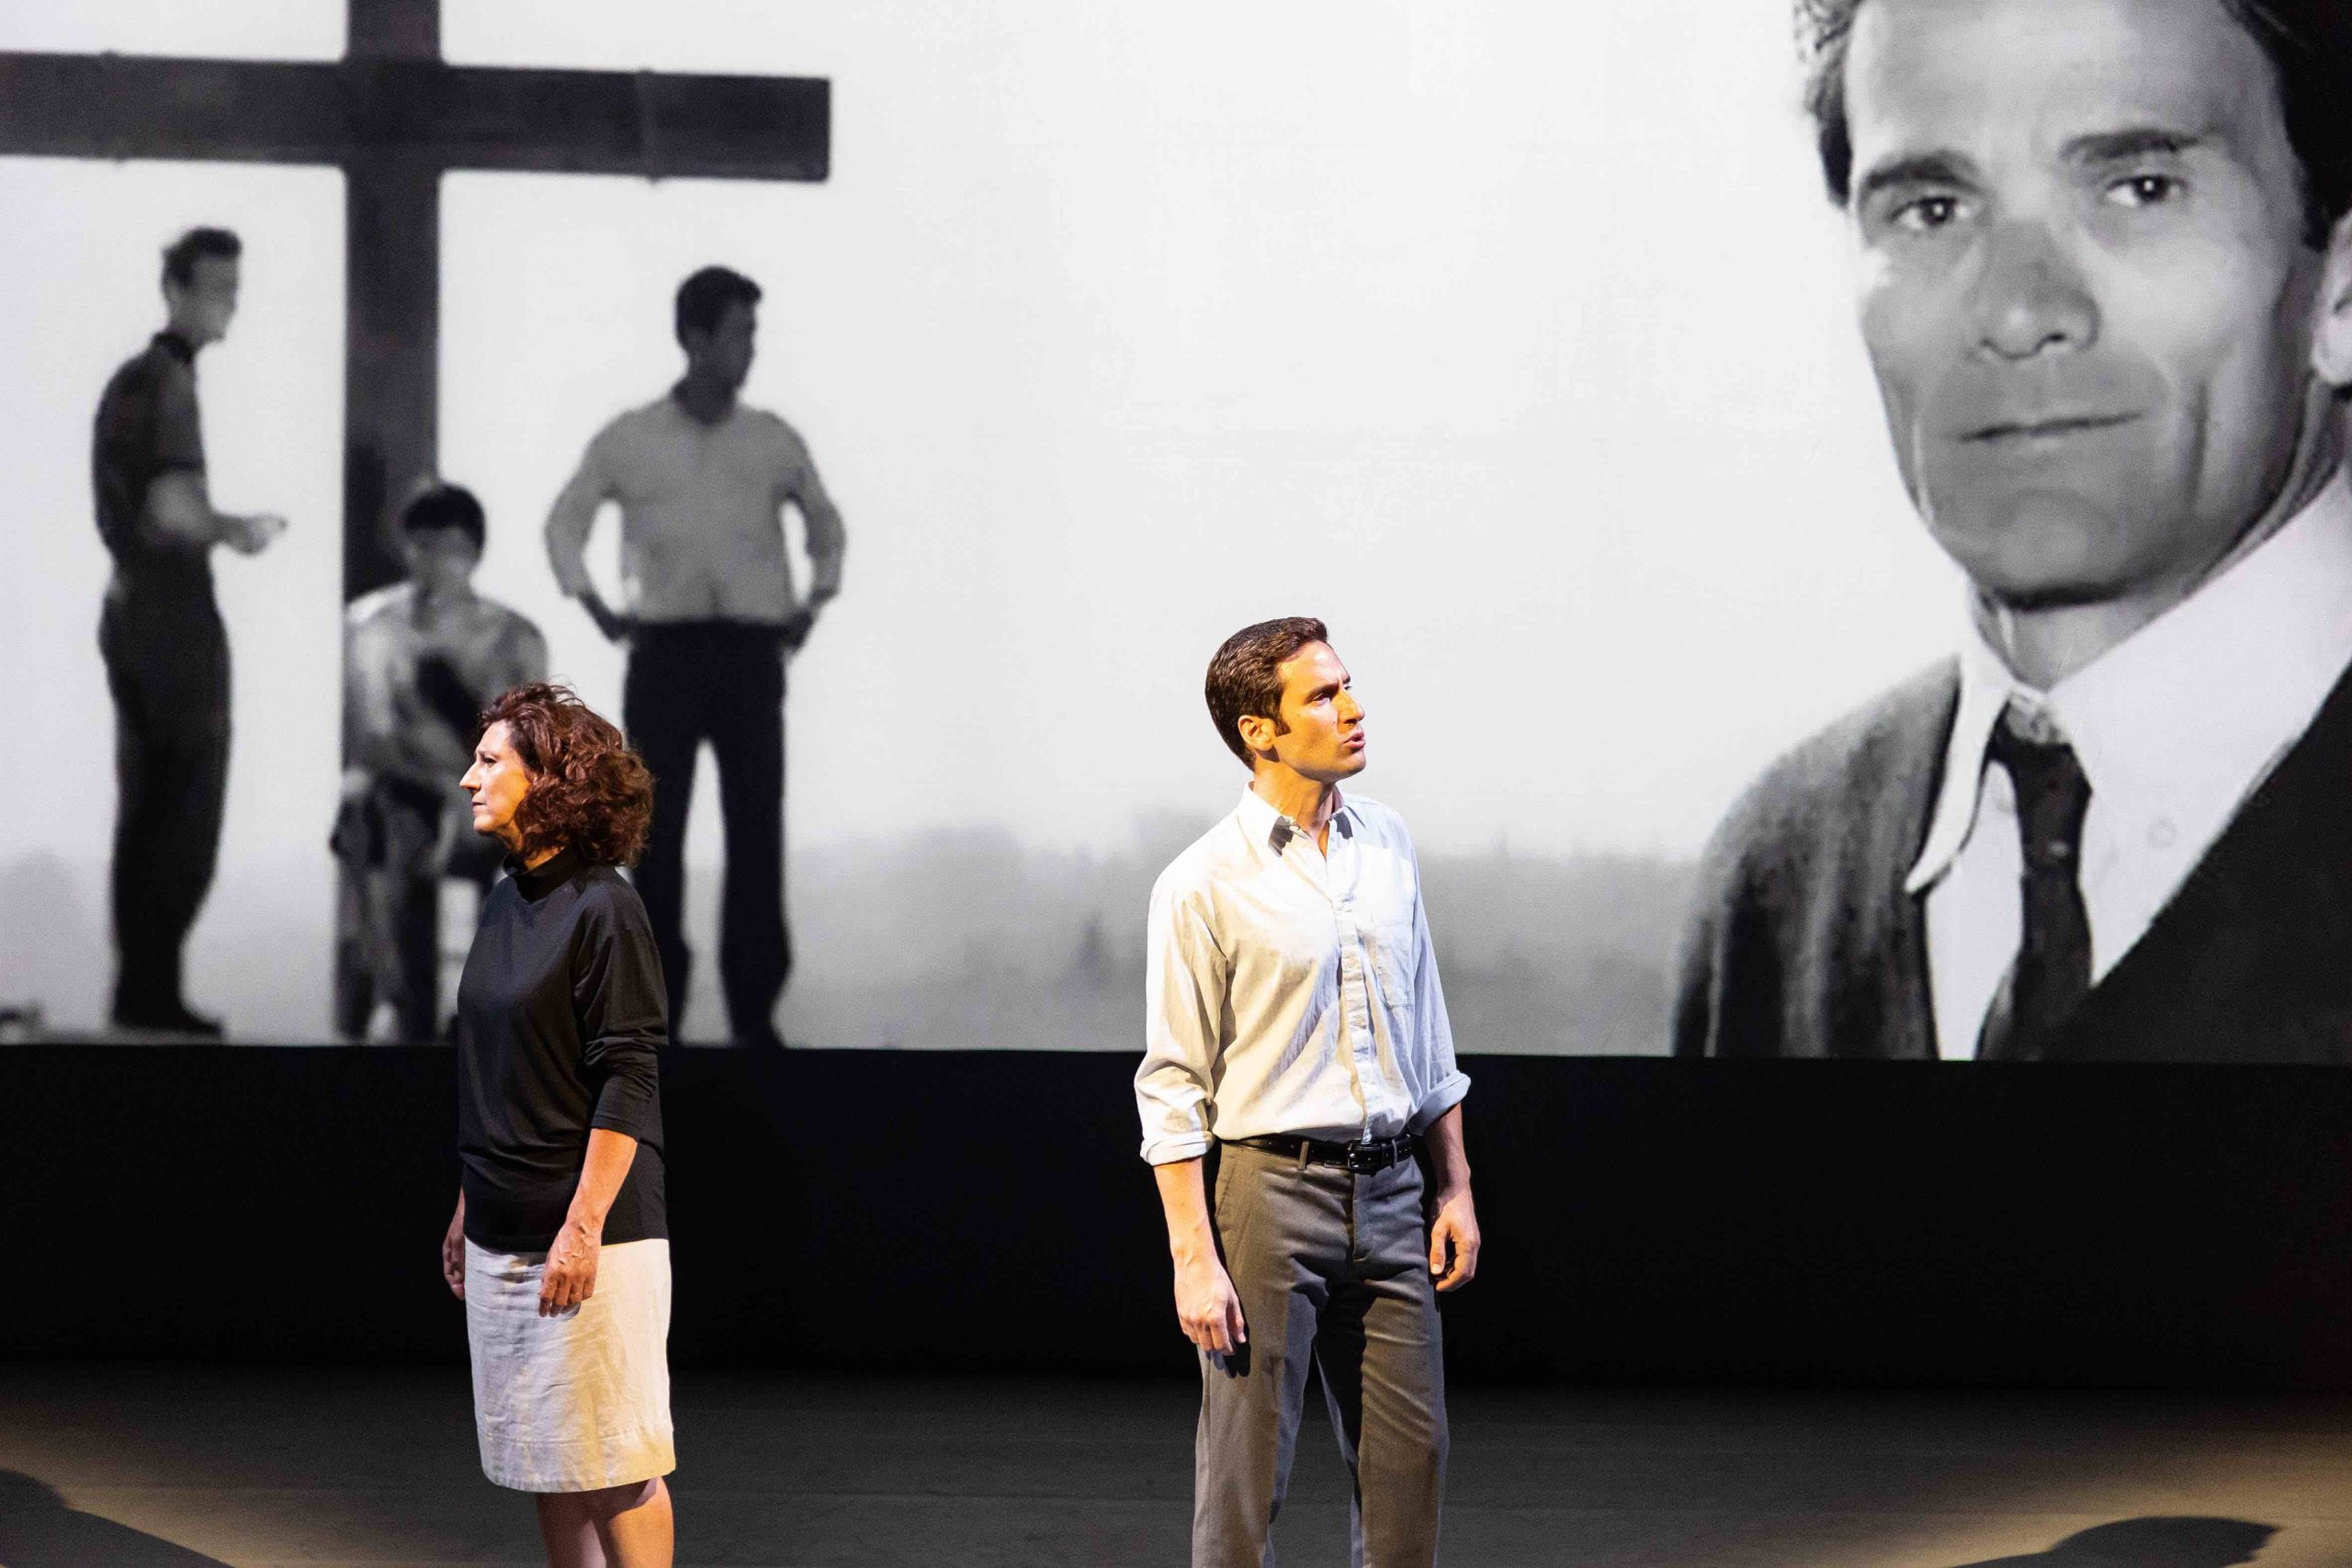 FESTIL: in collaborazione con Teatro Contatto 40, arriva in prima assoluta l’omaggio di Leonardo Petrillo alle figure di Pier Paolo Pasolini ed Ezra Pound